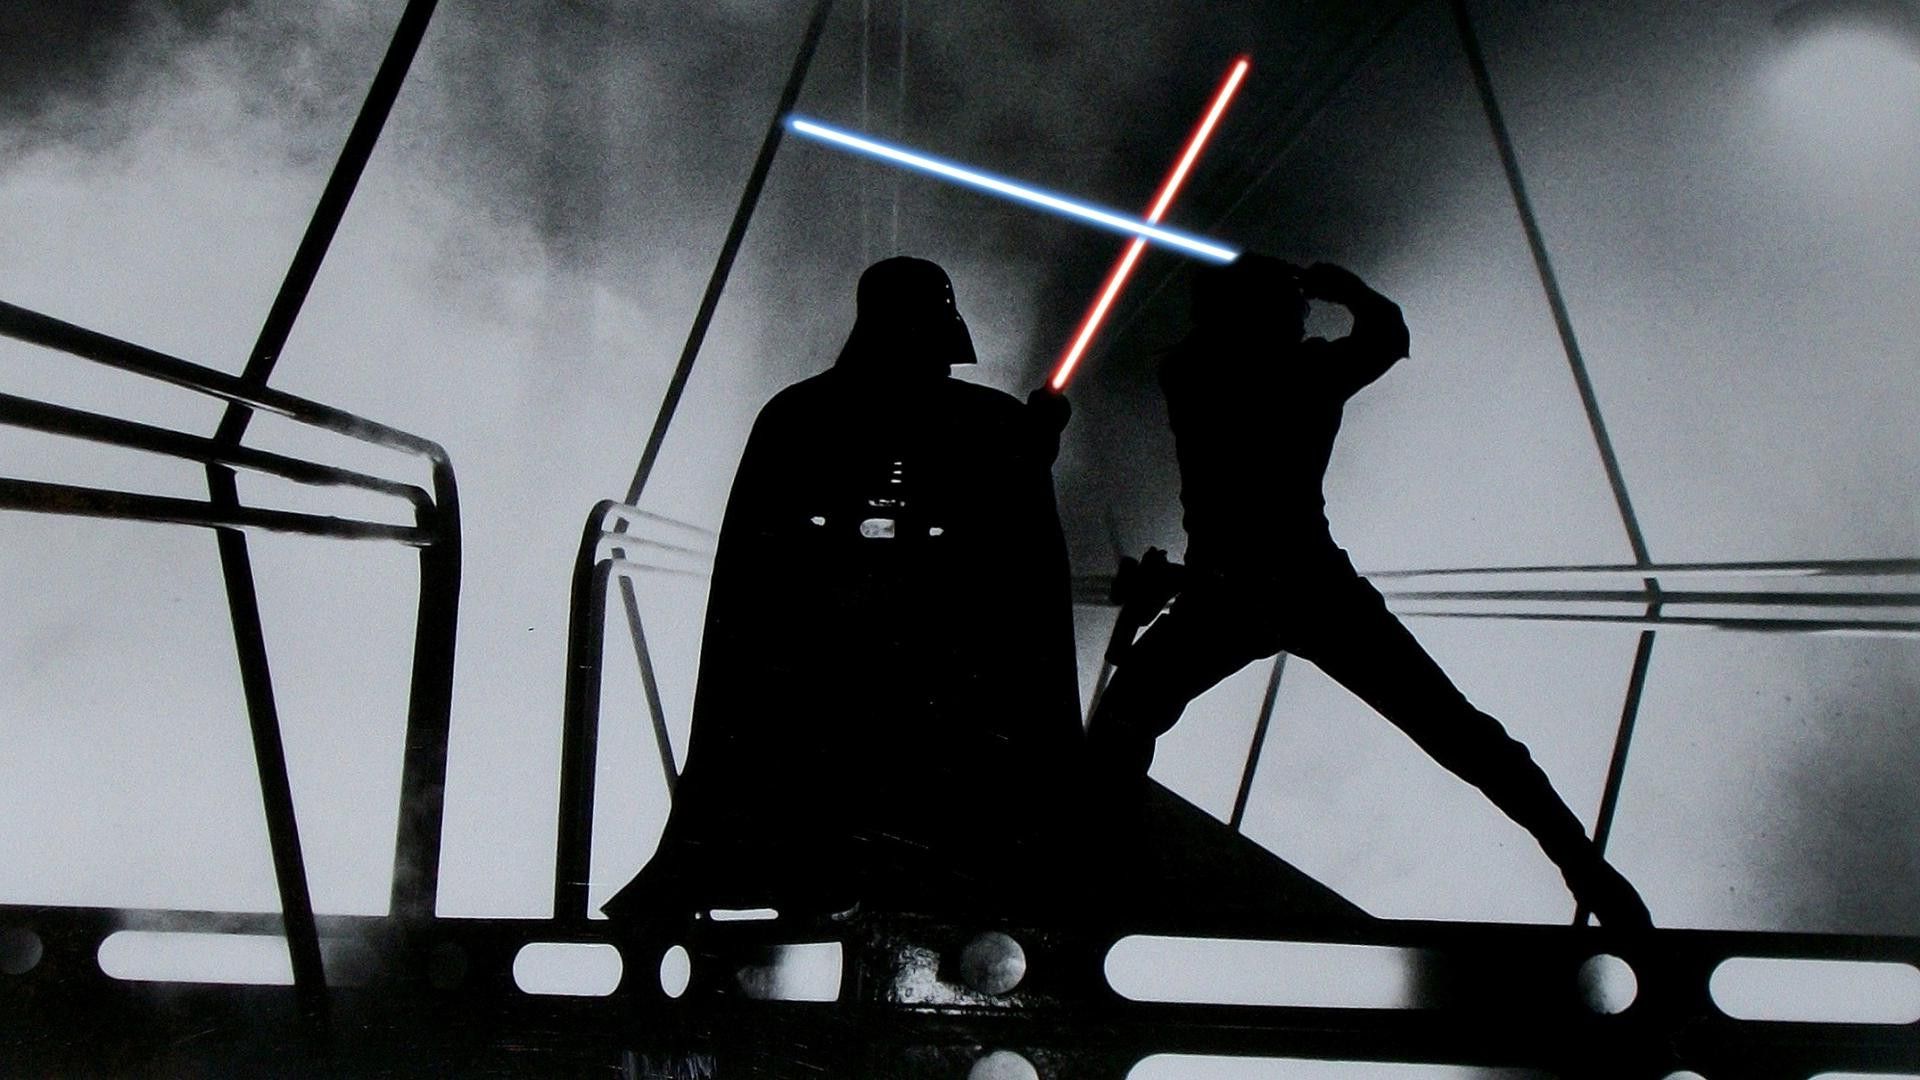 Star Wars, Lightsaber, Darth Vader, Luke Skywalker Wallpaper HD / Desktop and Mobile Background